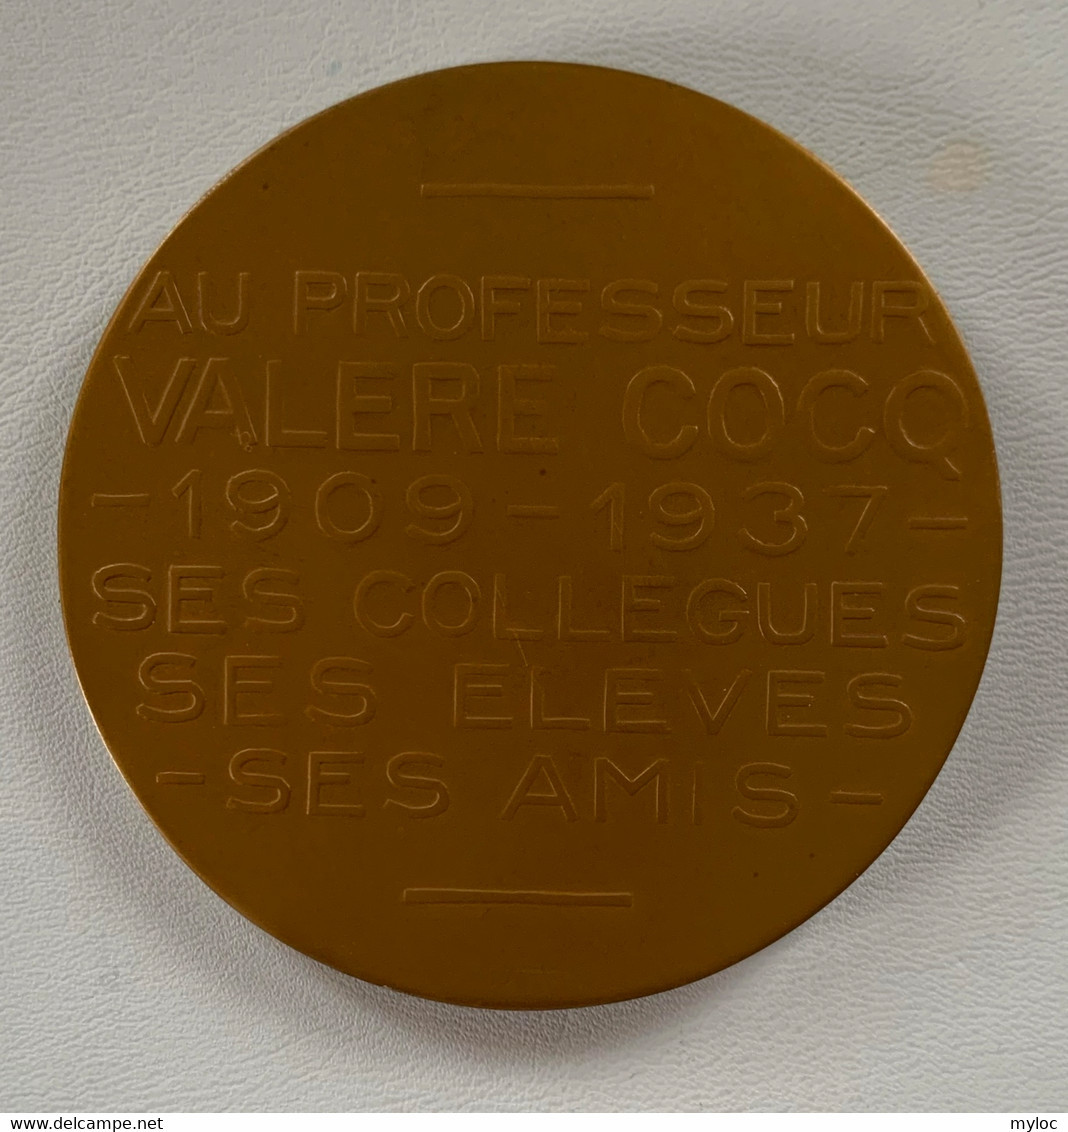 Médaille Bronze. Valère Cocq. Au Professeur Valère Cocq 1909-1934. Ses Collègues, Ses élèves, Ses Amis. A. Bonnetain - Professionnels / De Société